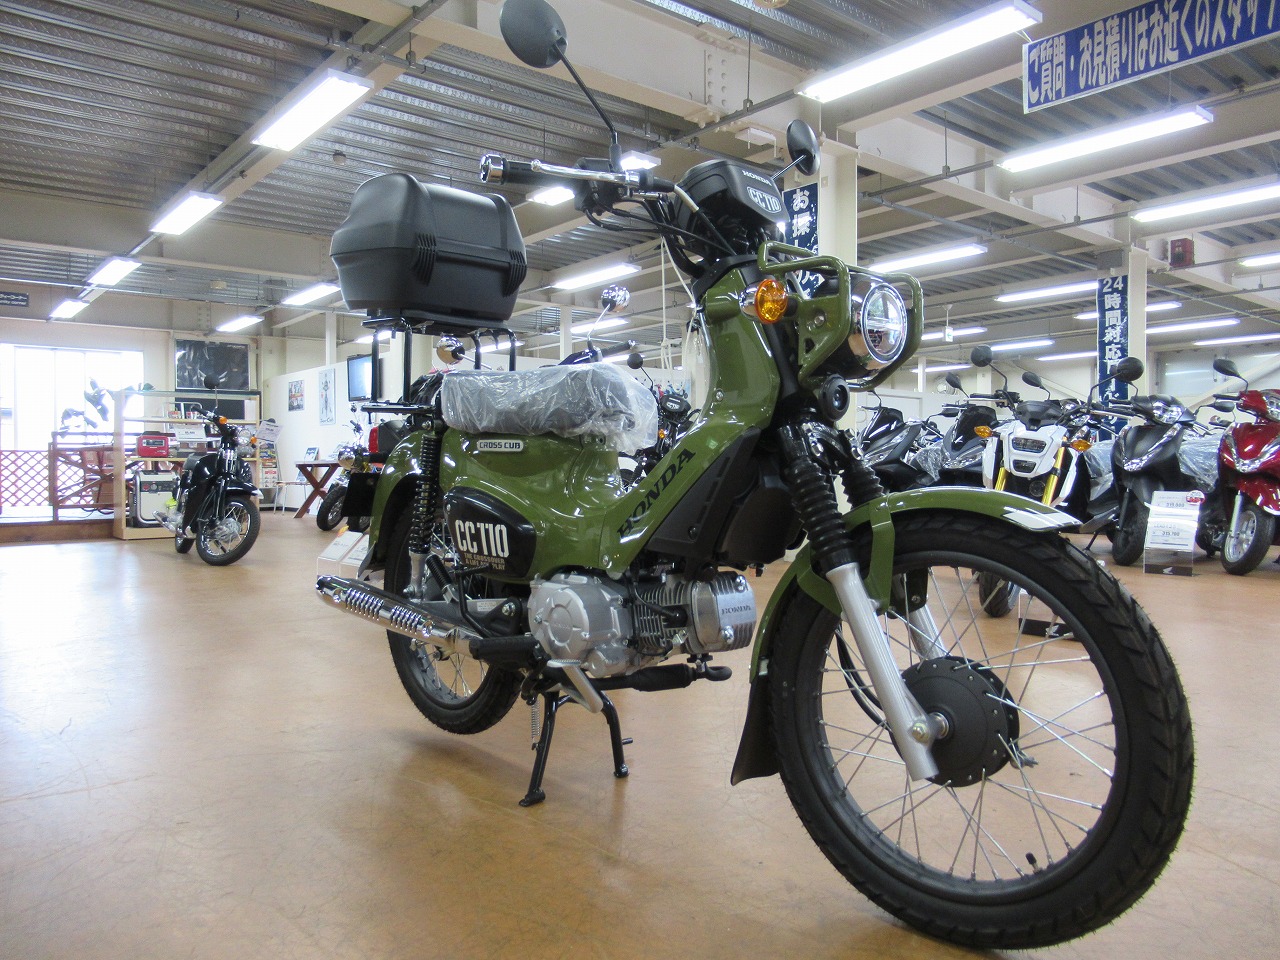 クロスカブ110 カスタムしてみました 最新情報 ホンダドリーム神奈川 バイクの専門店 新車 中古車をお探しならホンダドリーム神奈川へ